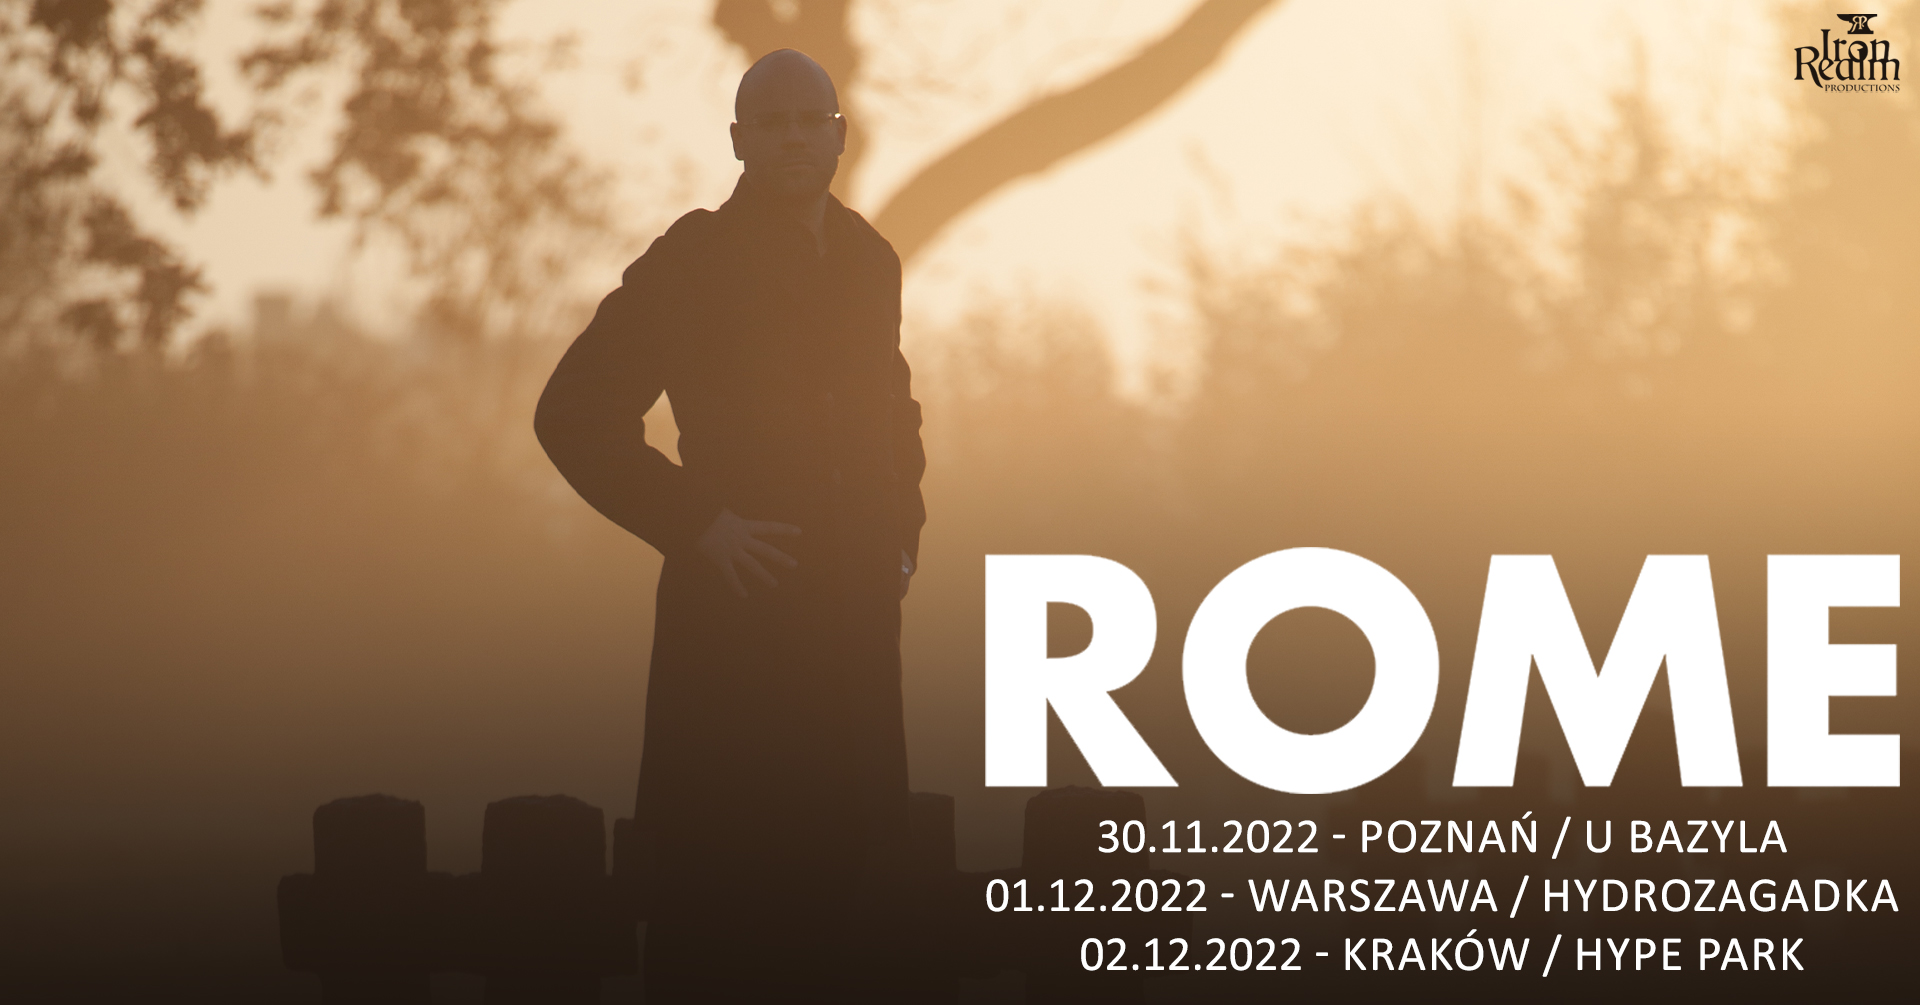 Jerome ROME Reuter / 30 XI / Poznań